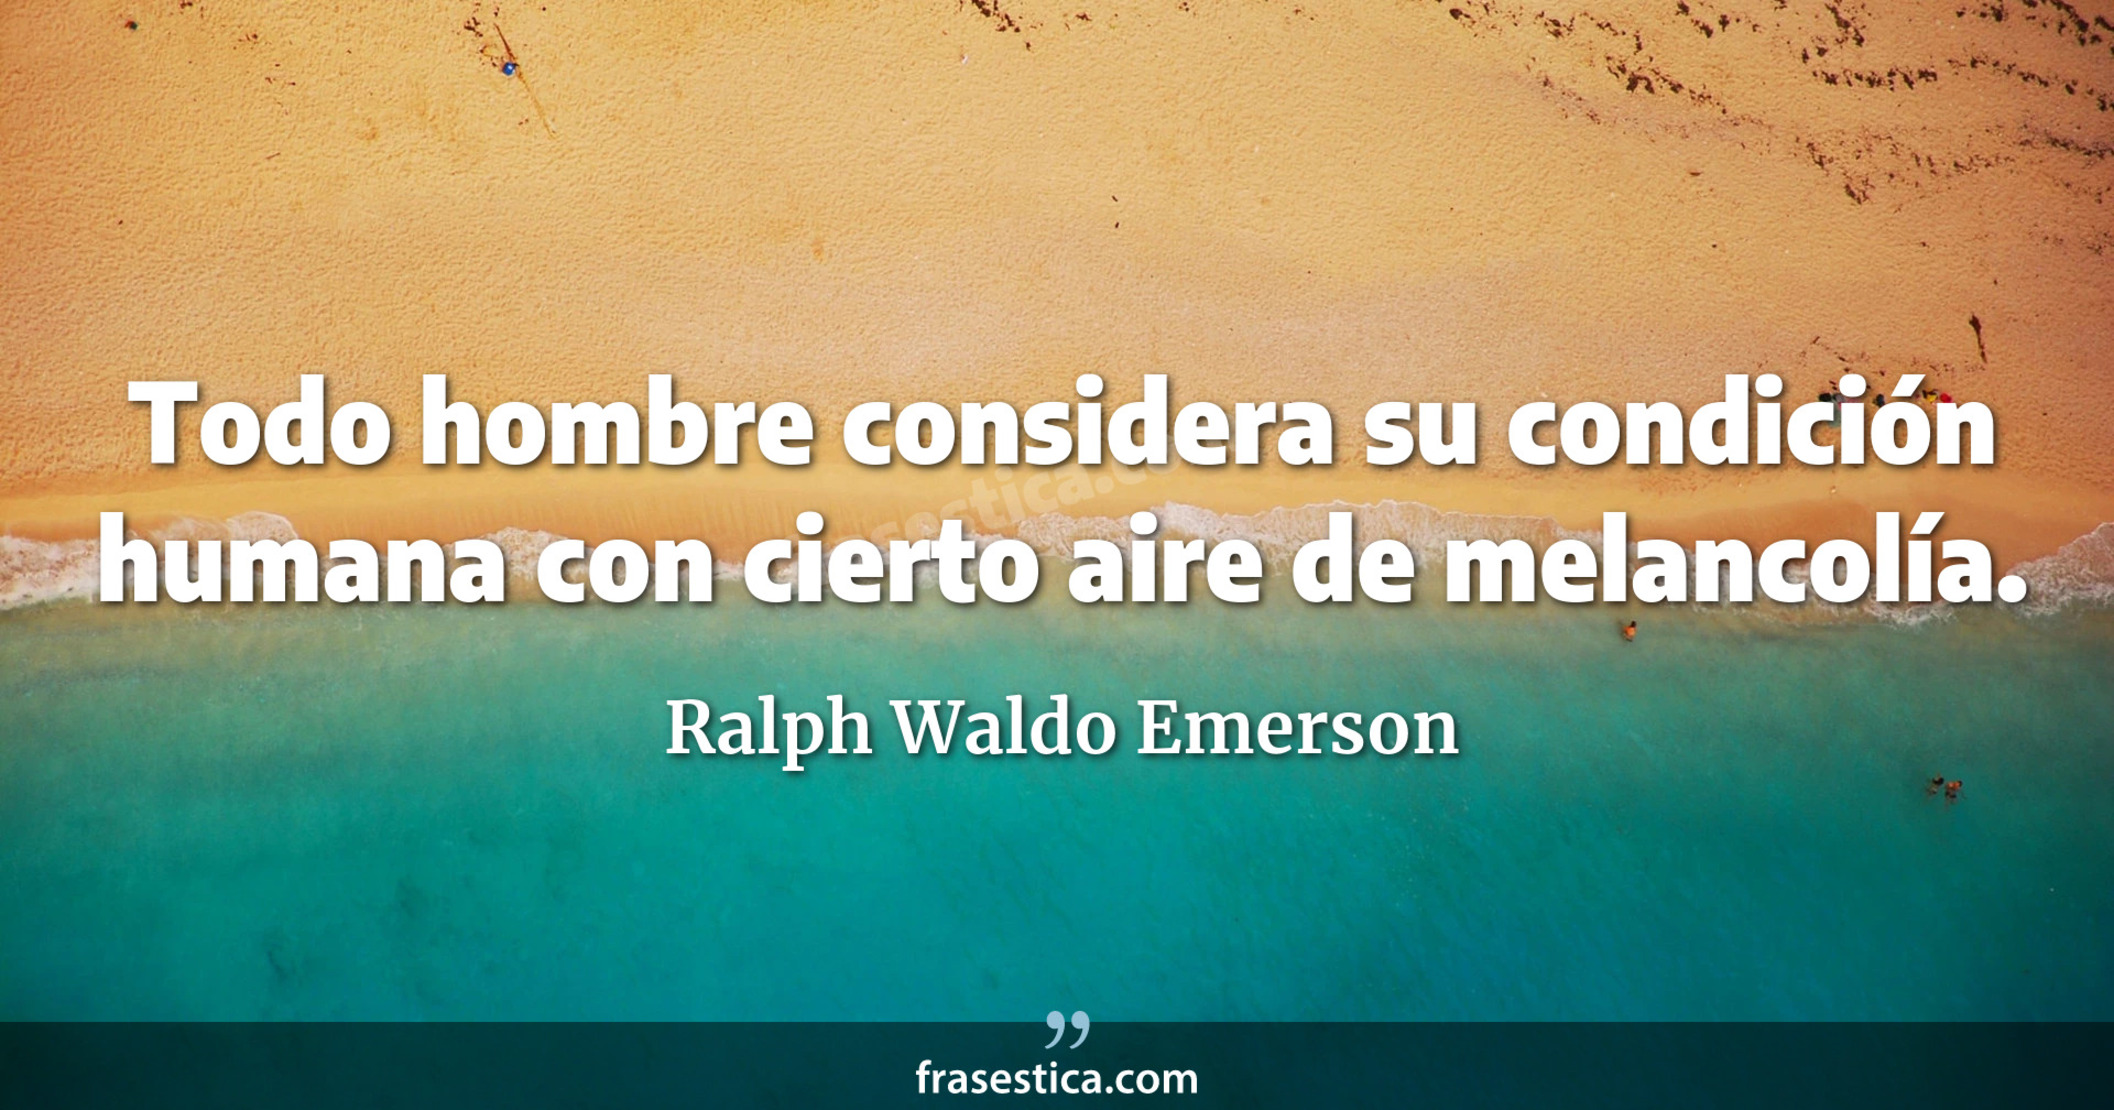 Todo hombre considera su condición humana con cierto aire de melancolía. - Ralph Waldo Emerson